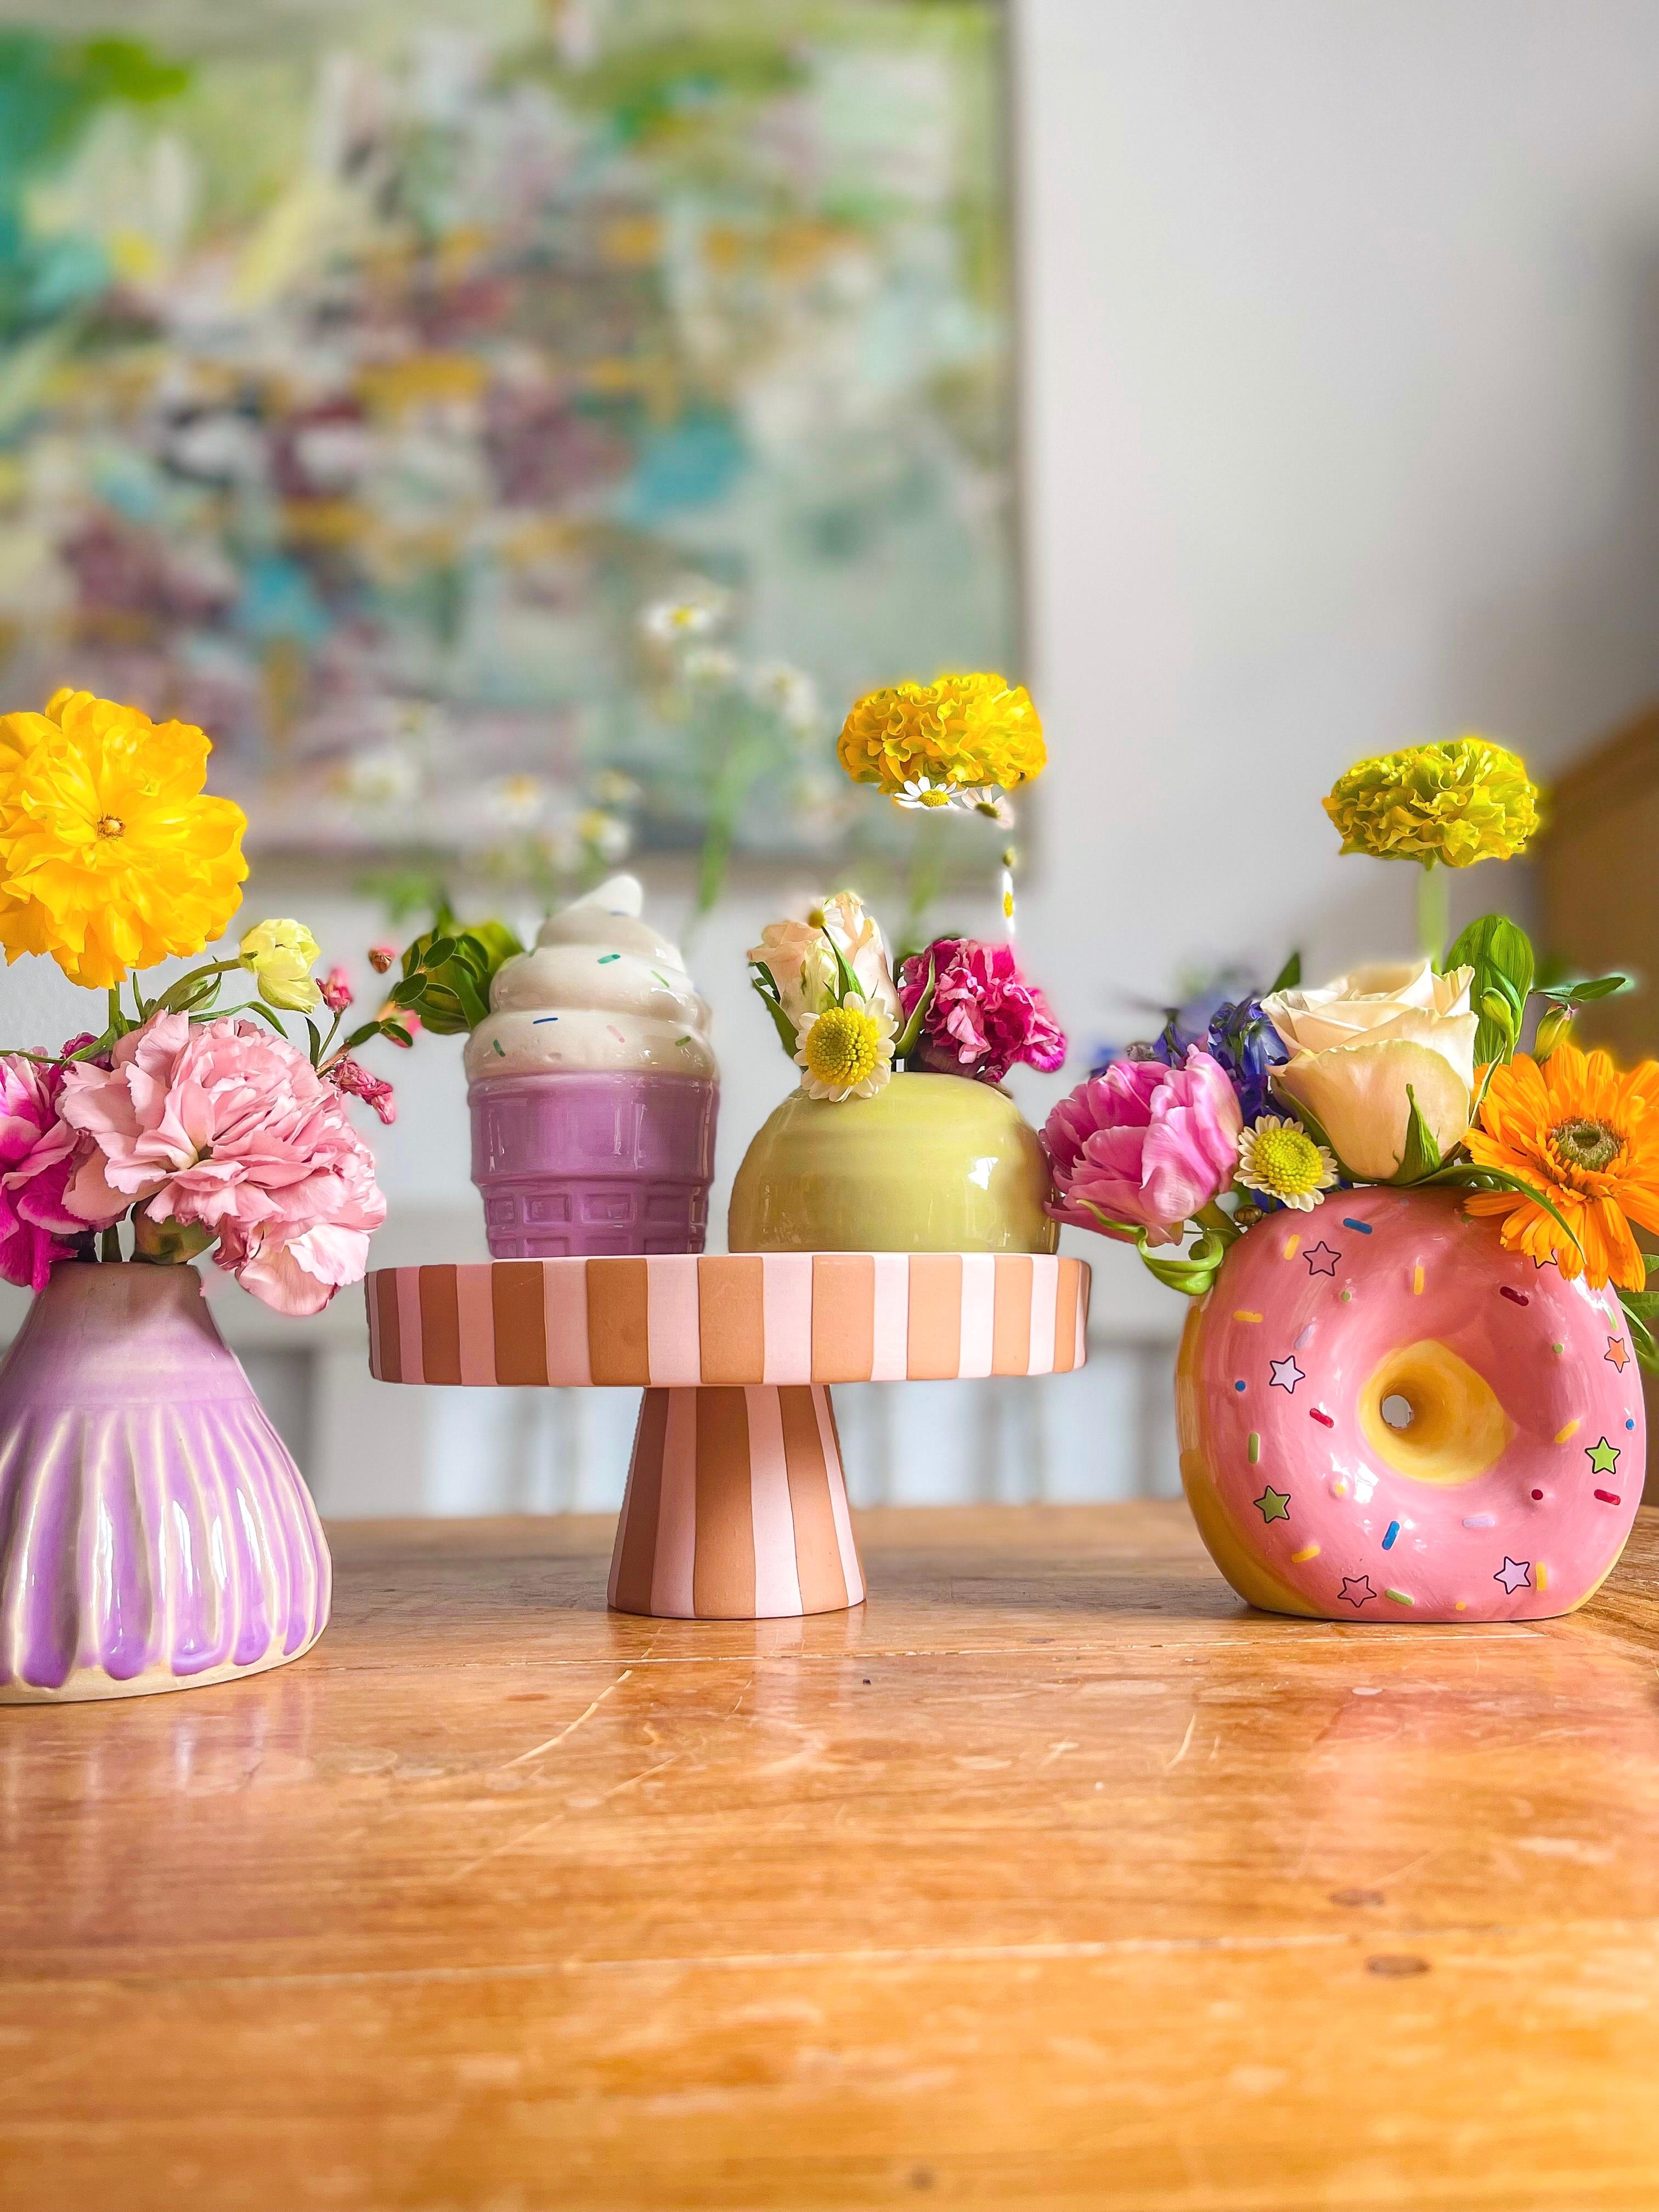 Jemand ein #Blumen-Eis oder #Donut gefällig?! #Süße #Vasen #Leckereien zum anschmachten zum #vasenmittwoch 🥰🍩🍦